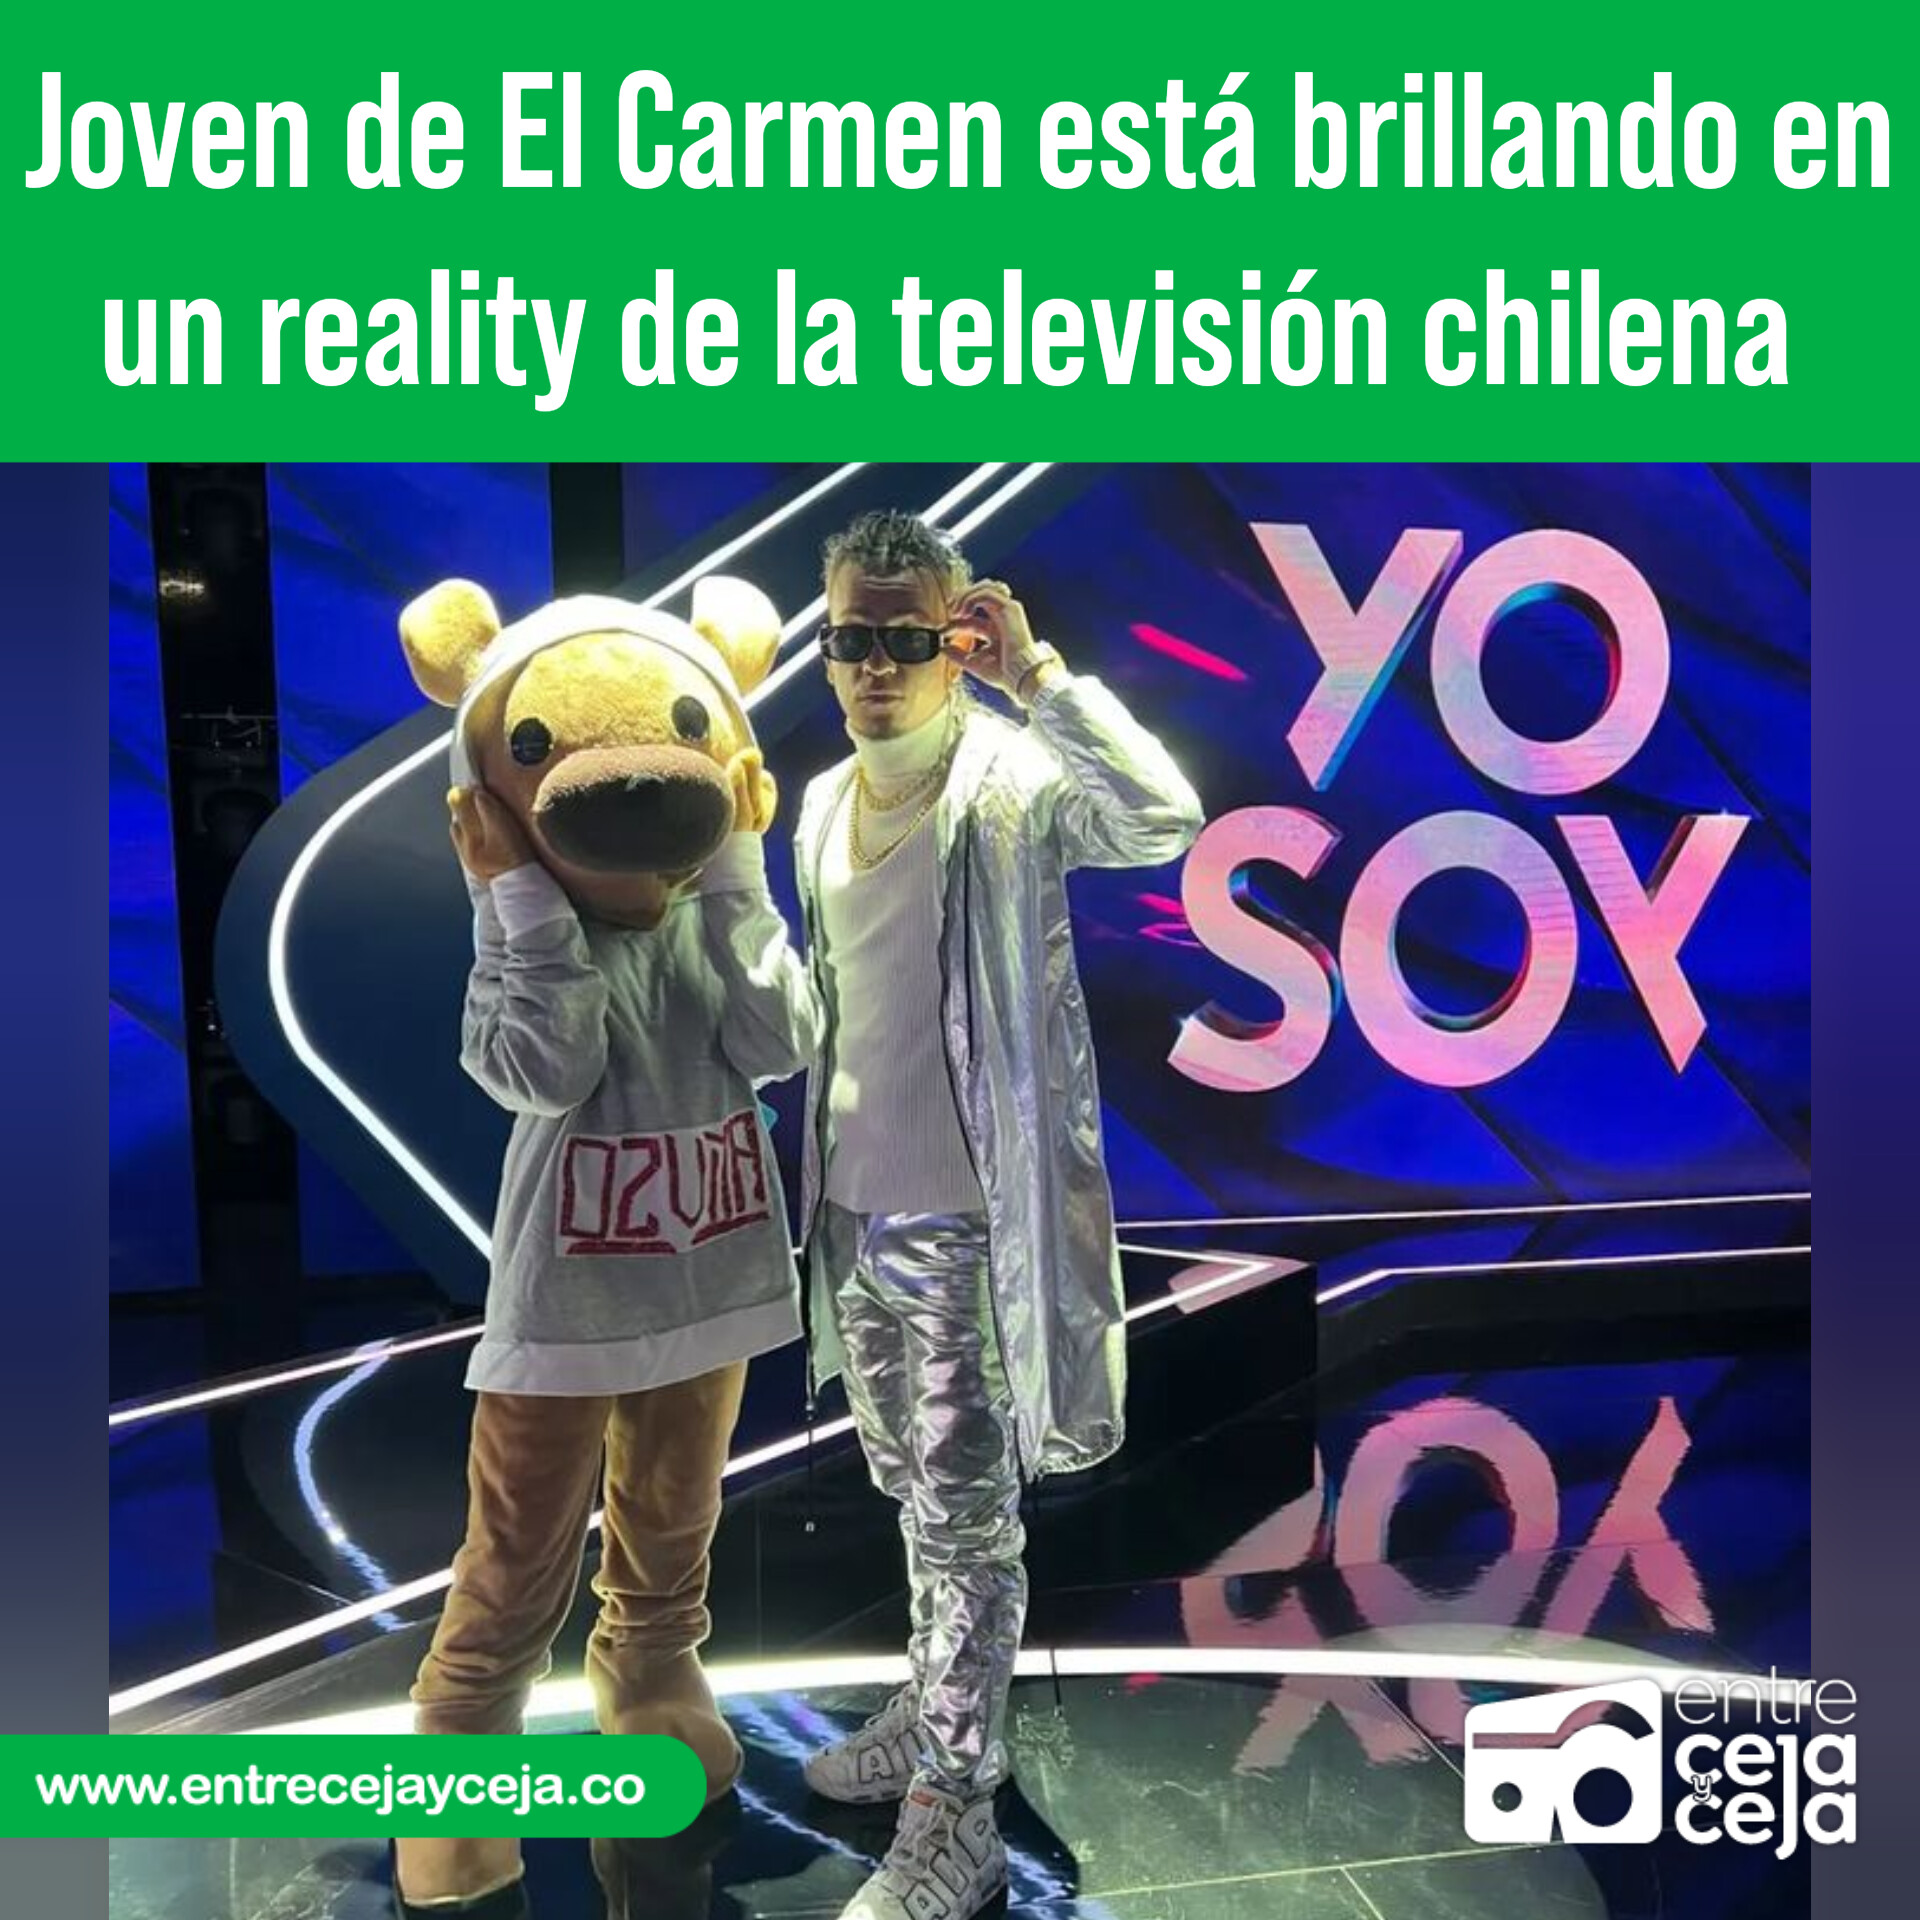 Joven de El Carmen de Viboral esta brillando en el reality Yo Soy de Chile